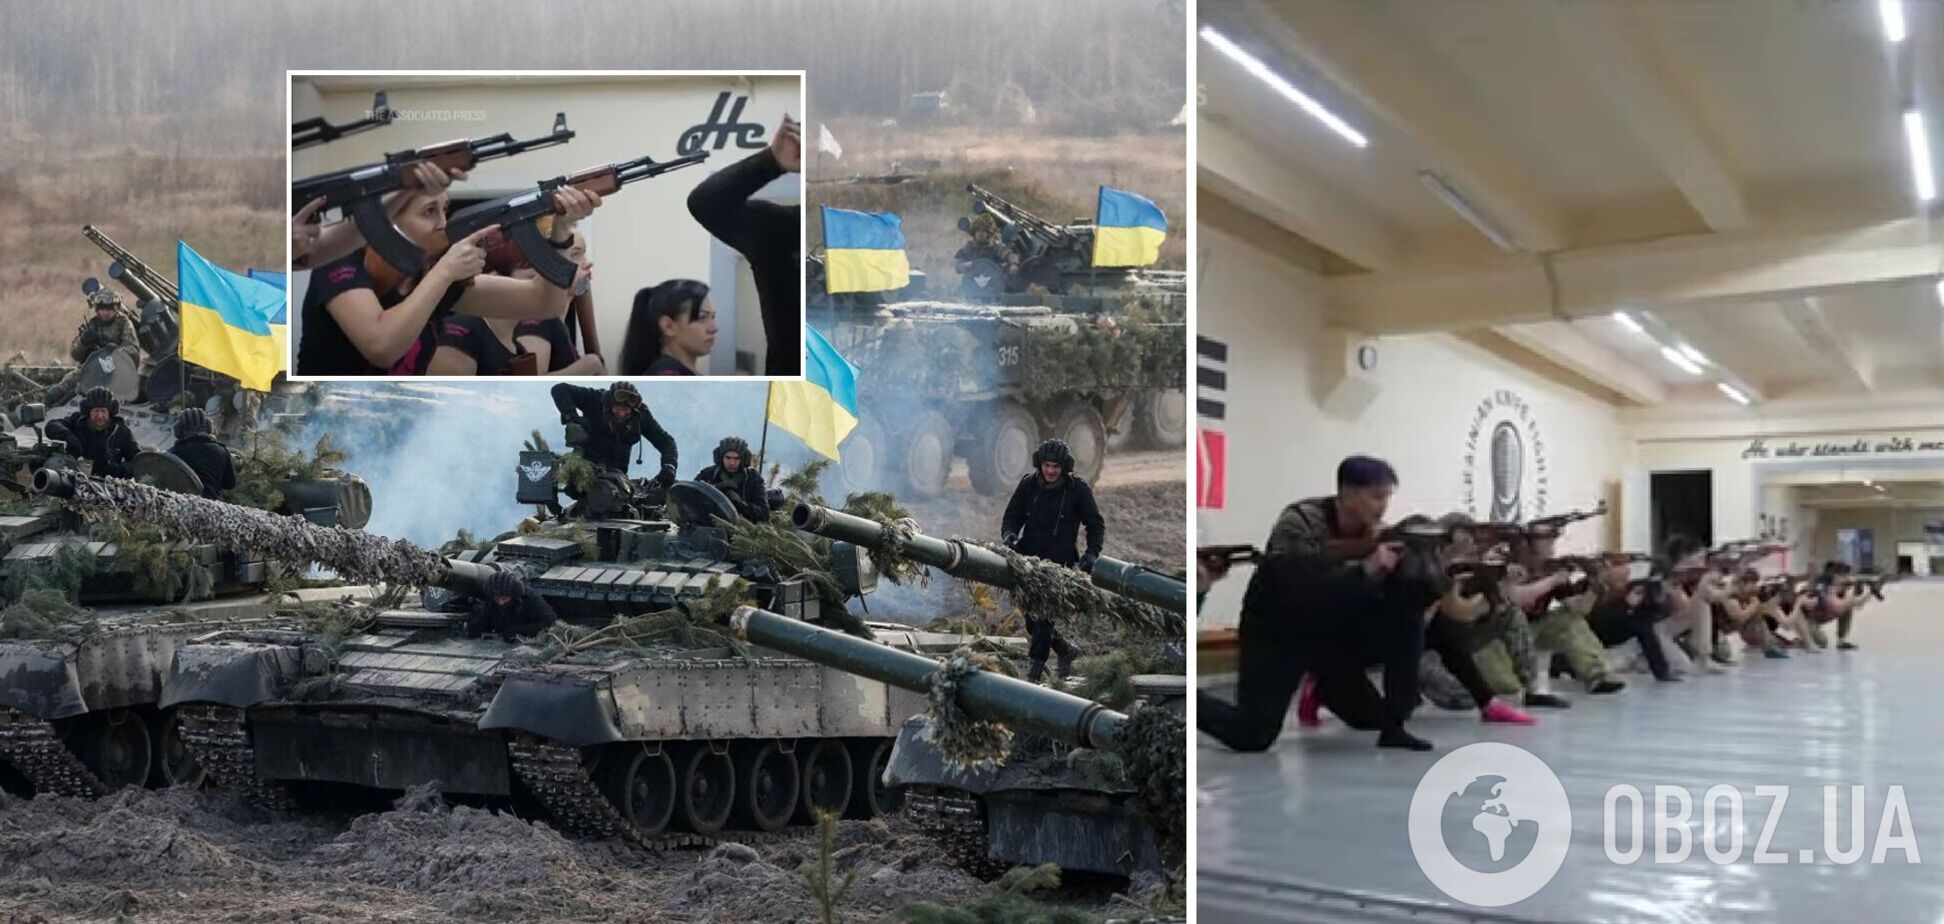 'Мы возьмем оружие и защитим наш город от РФ': 55-летняя украинка рассказала, зачем ей военная подготовка. Видео